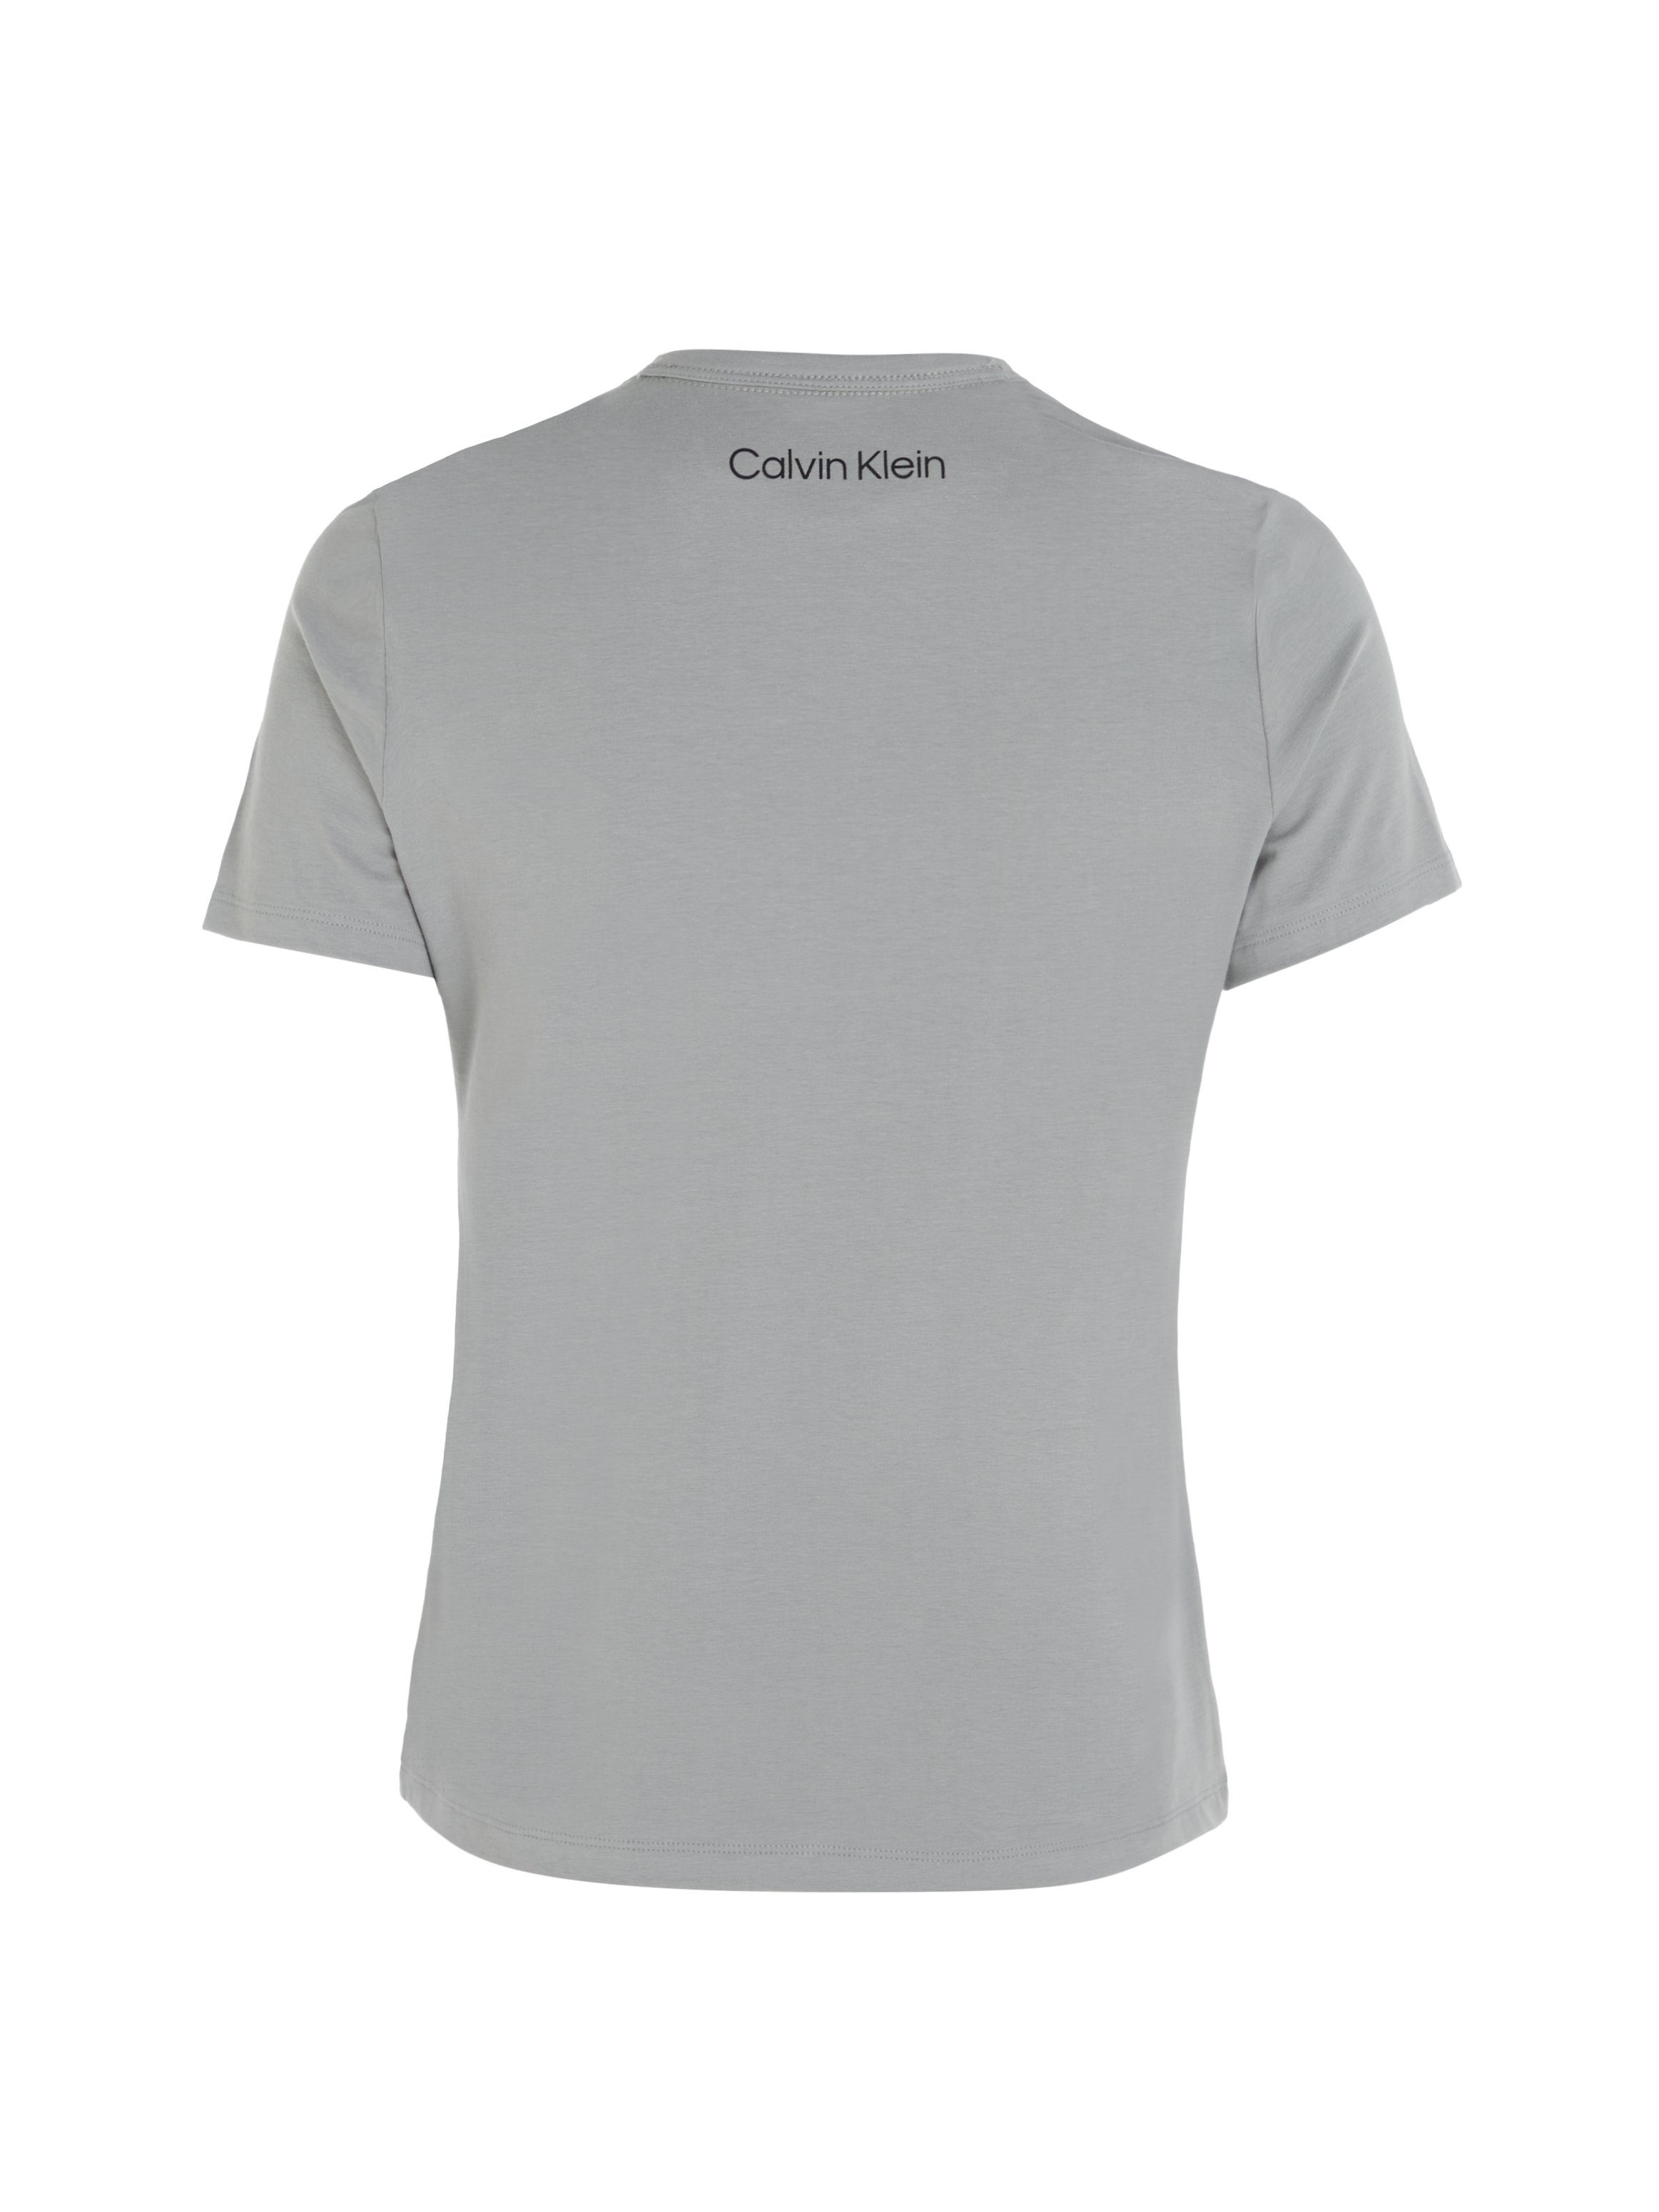 Calvin Klein Underwear NECK Kurzarmshirt GREY-HEATHER S/S CREW